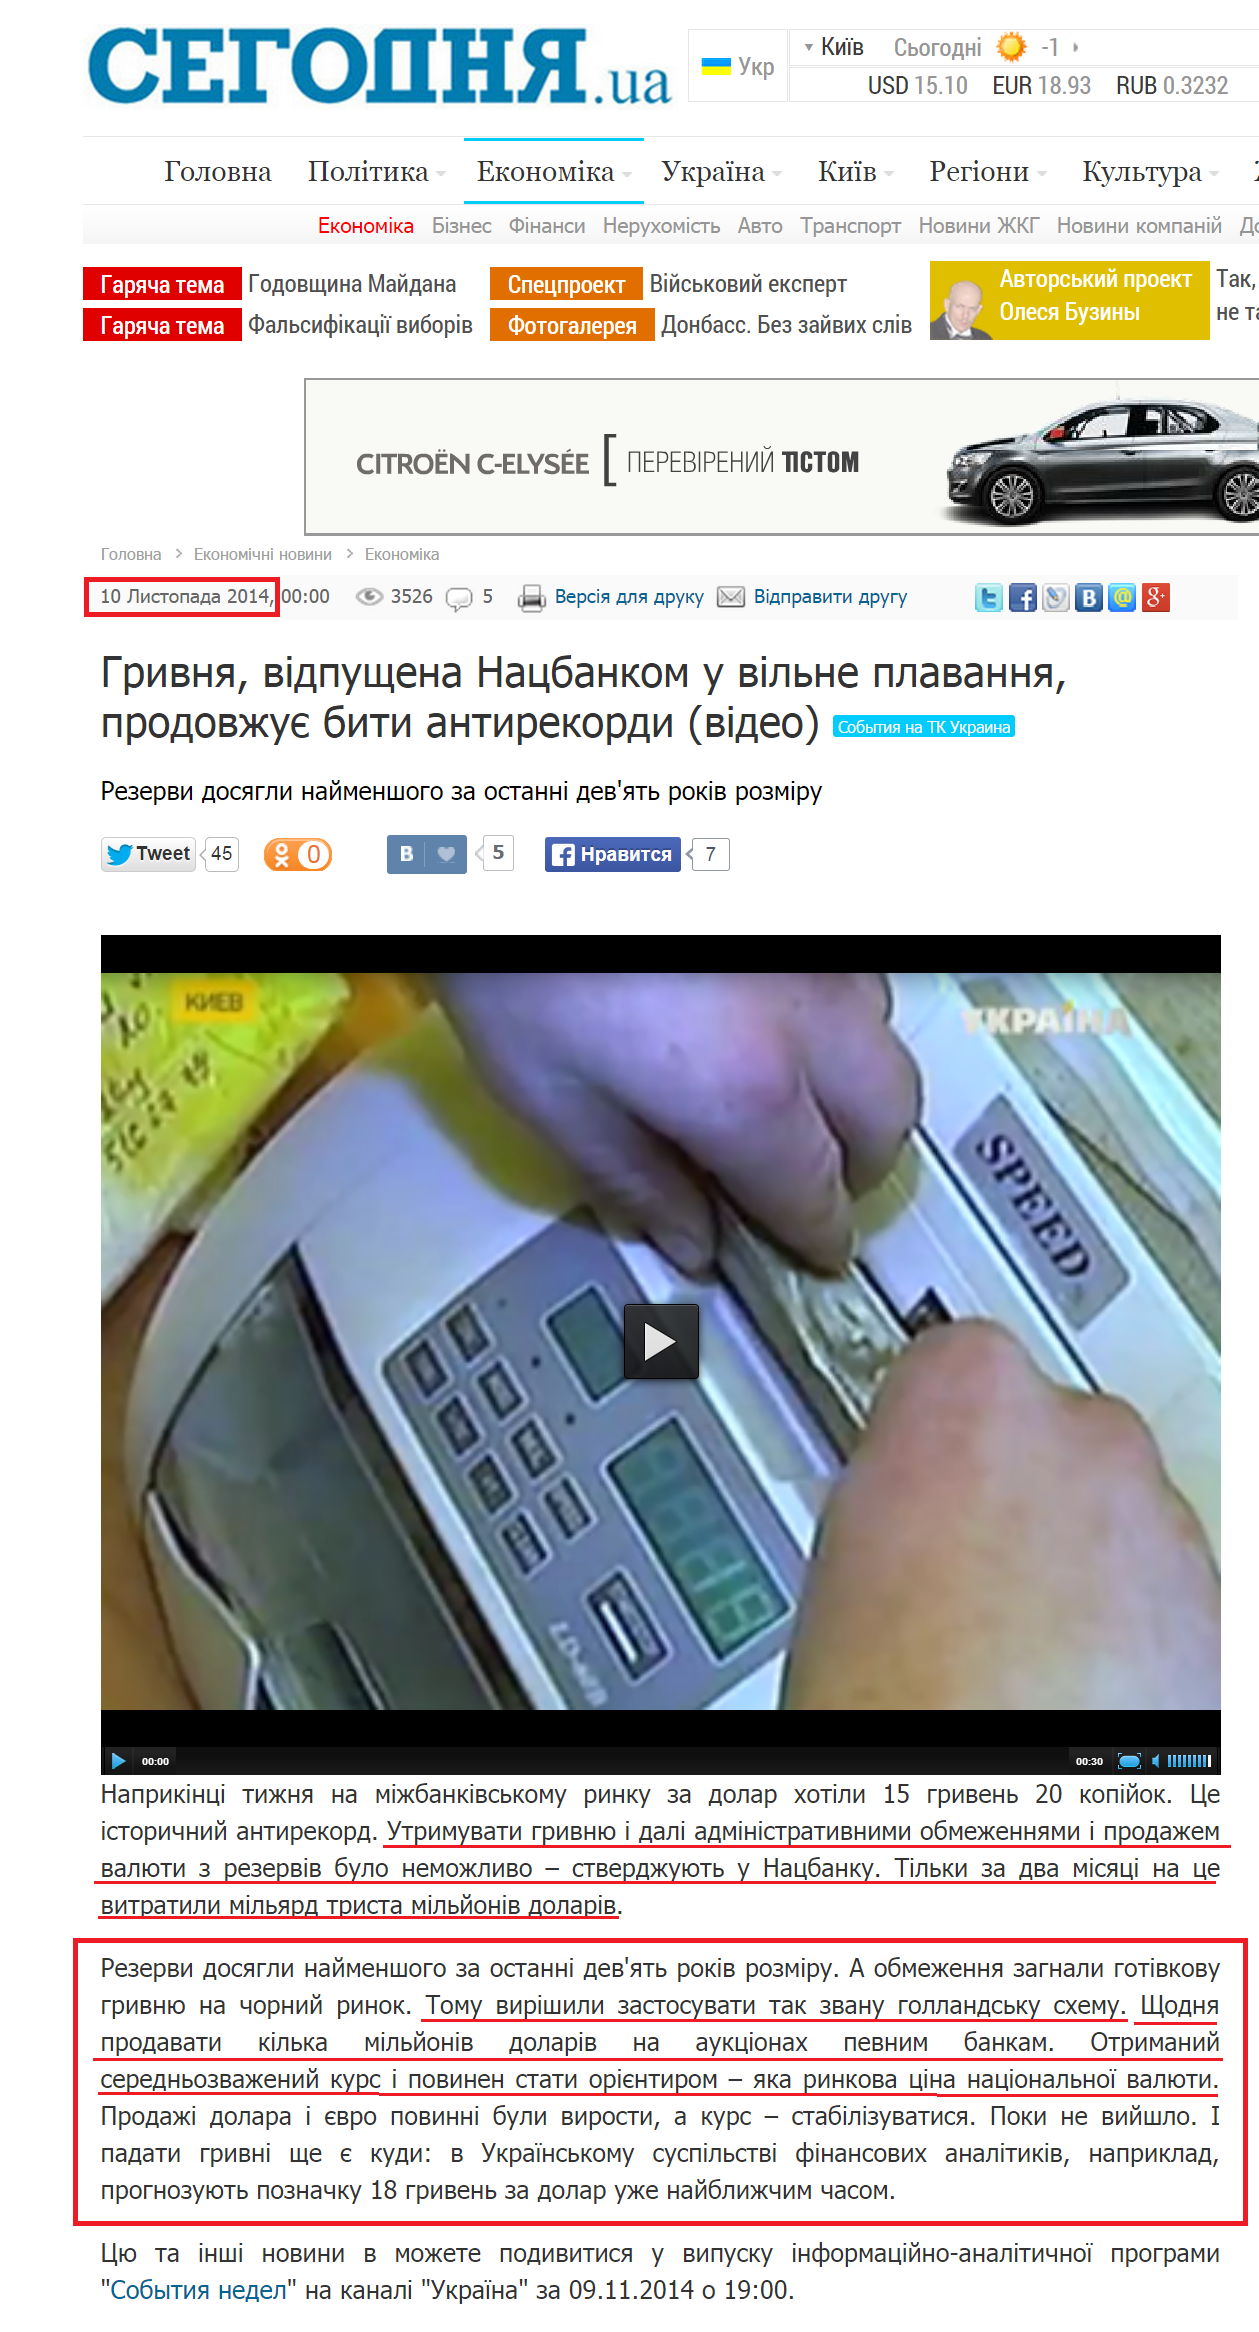 http://ukr.segodnya.ua/economics/enews/grivna-otpushchennaya-nacbankom-v-svobodnoe-plavanie-prodolzhaet-bit-antirekordy-567887.html